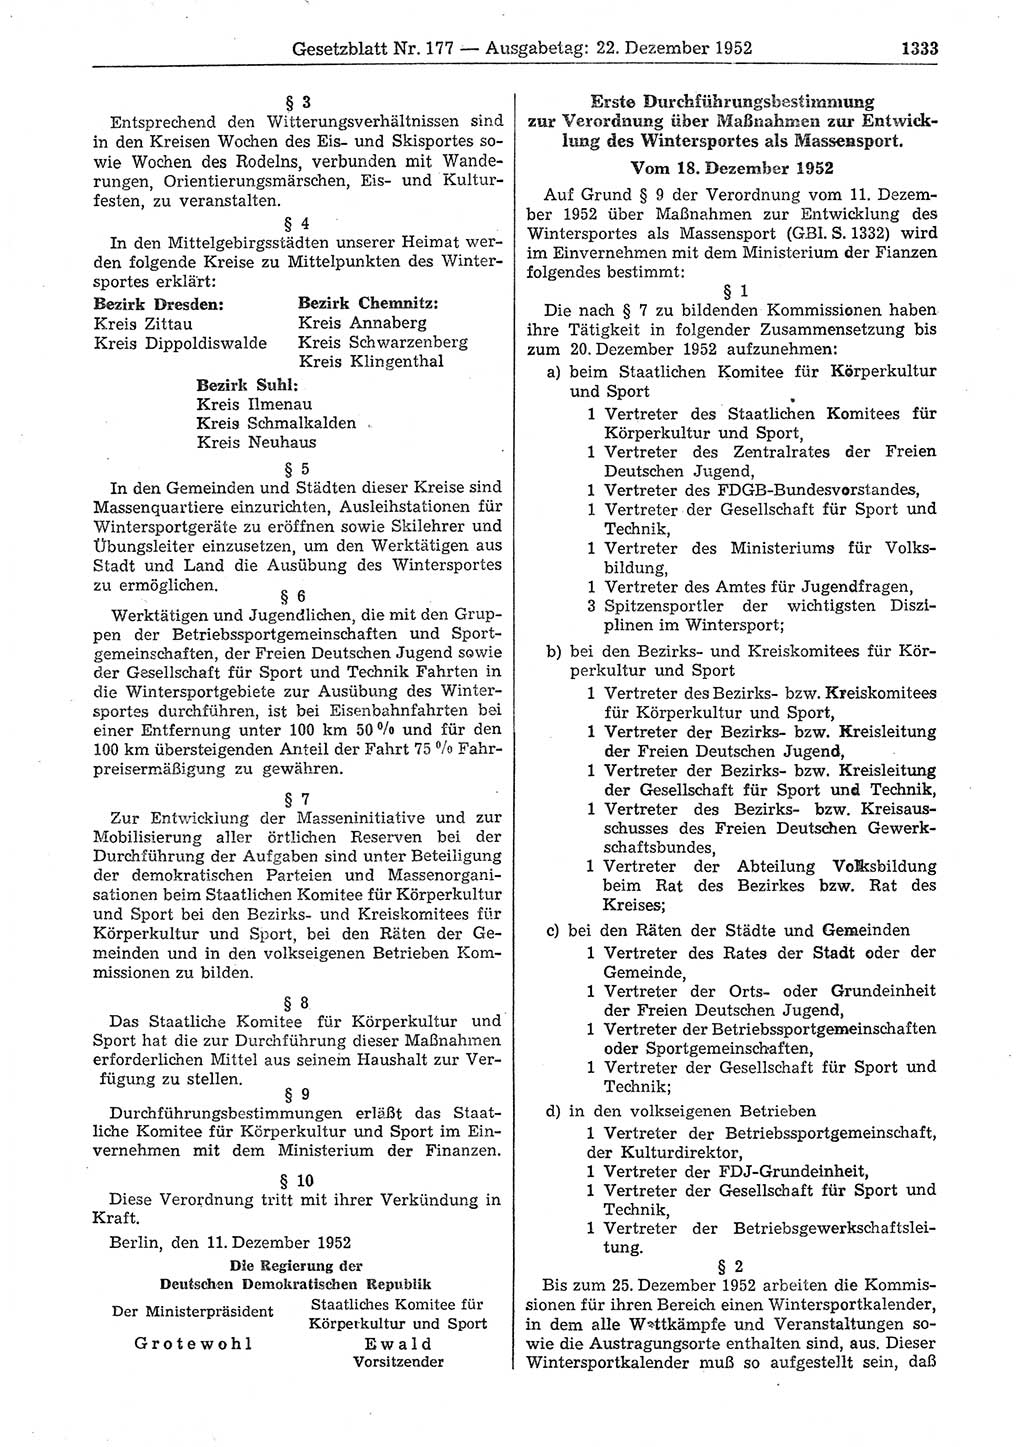 Gesetzblatt (GBl.) der Deutschen Demokratischen Republik (DDR) 1952, Seite 1333 (GBl. DDR 1952, S. 1333)